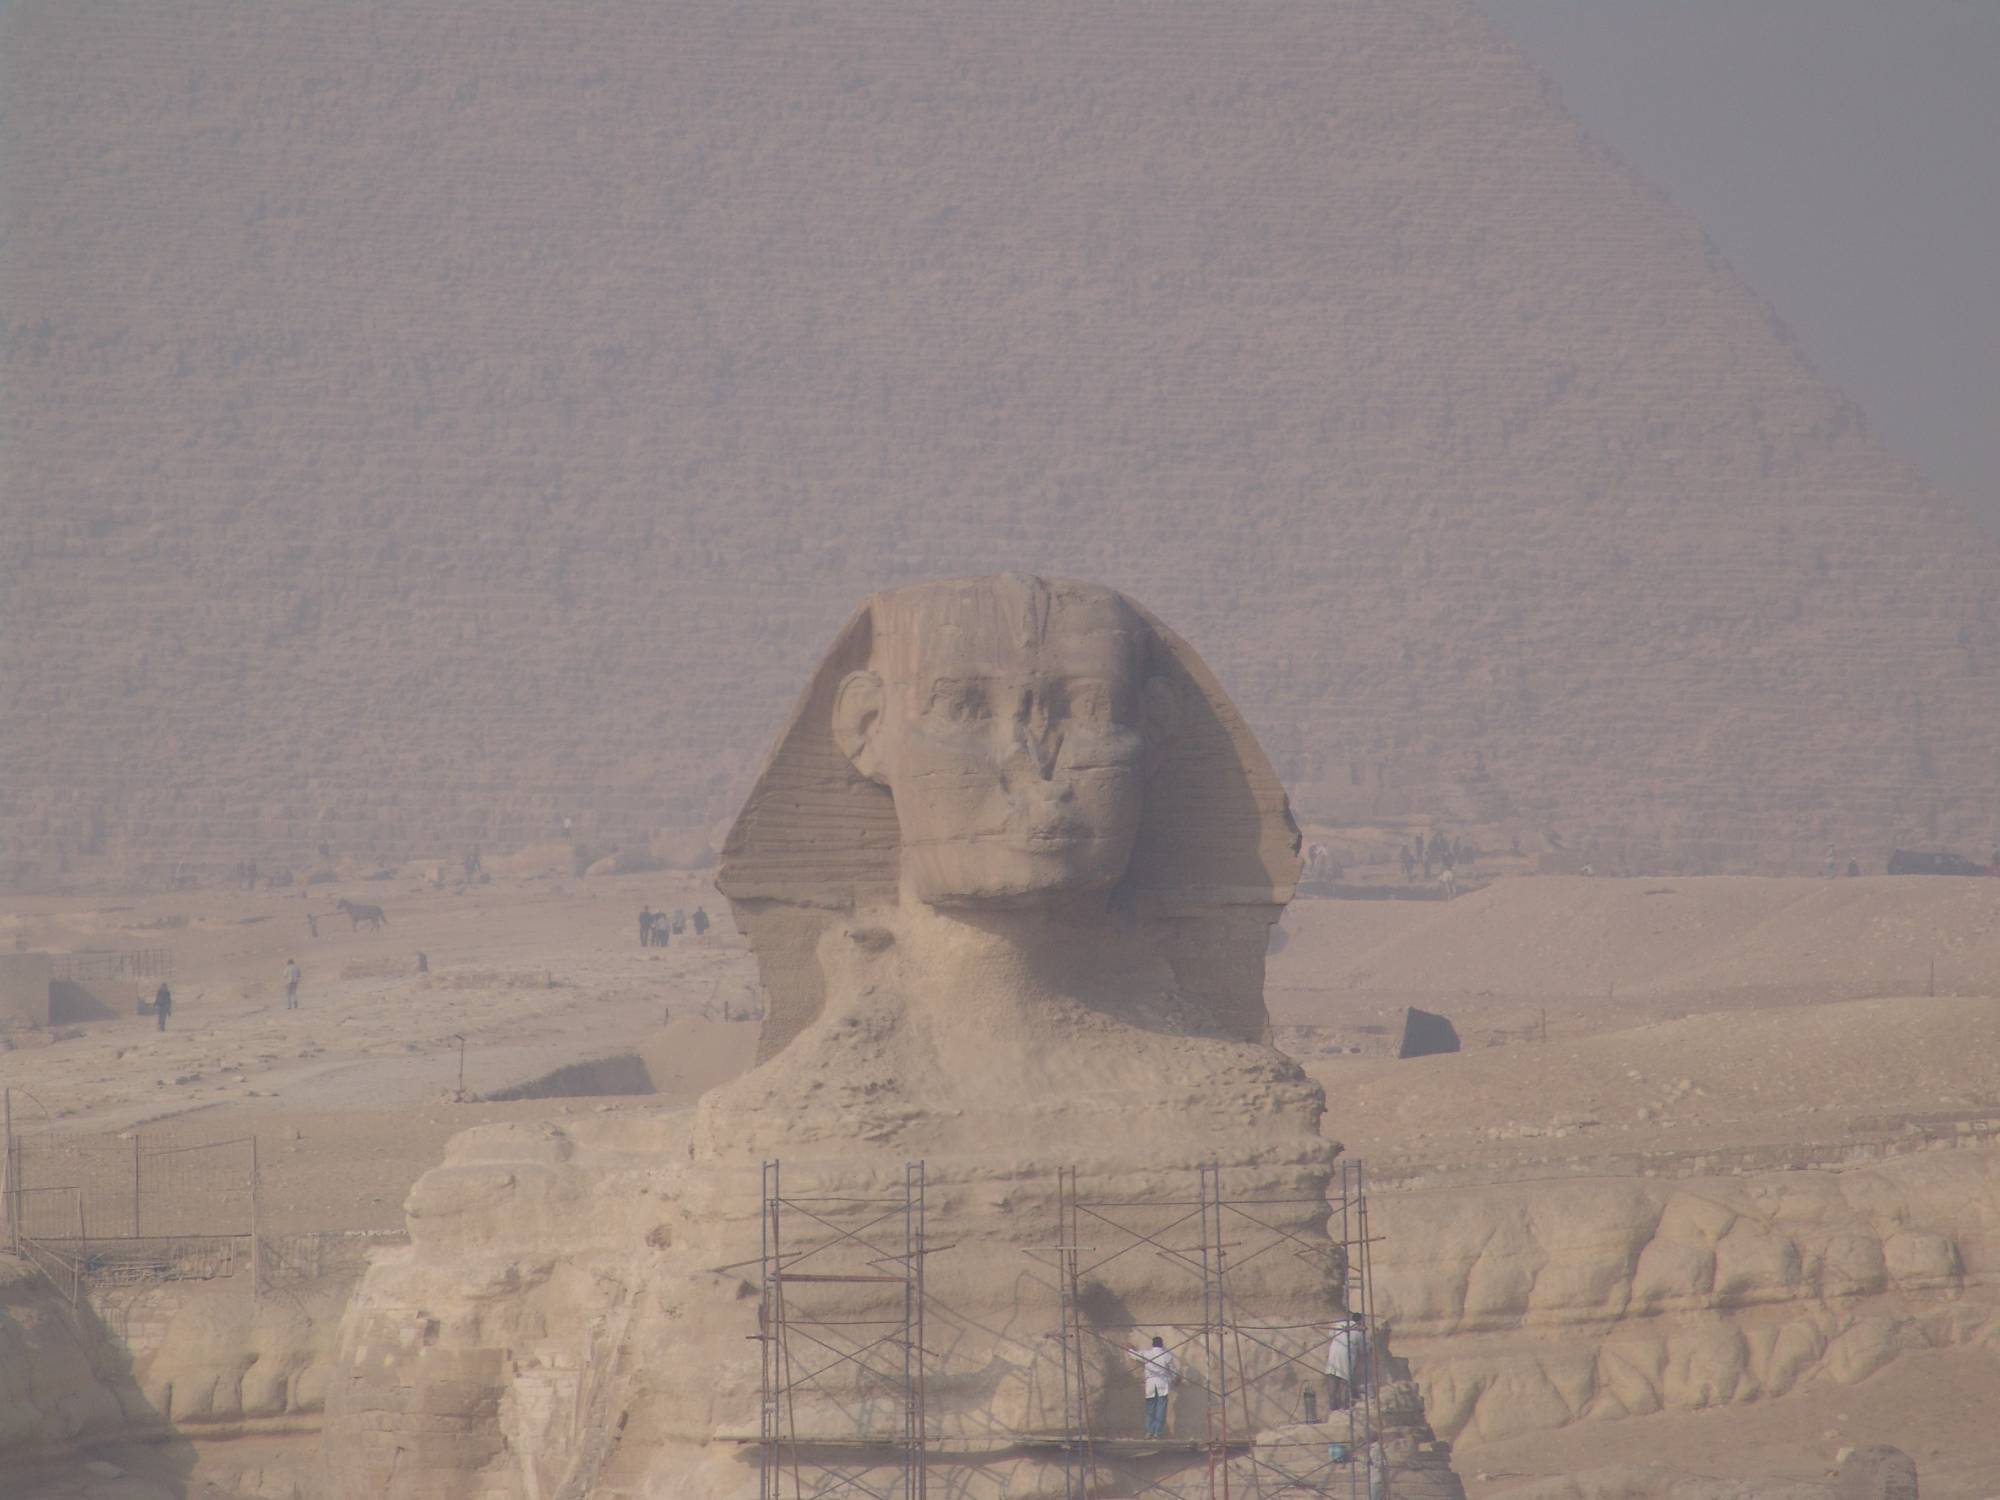 Discover thr wonder of the Great Pyramids | PassPorter.com